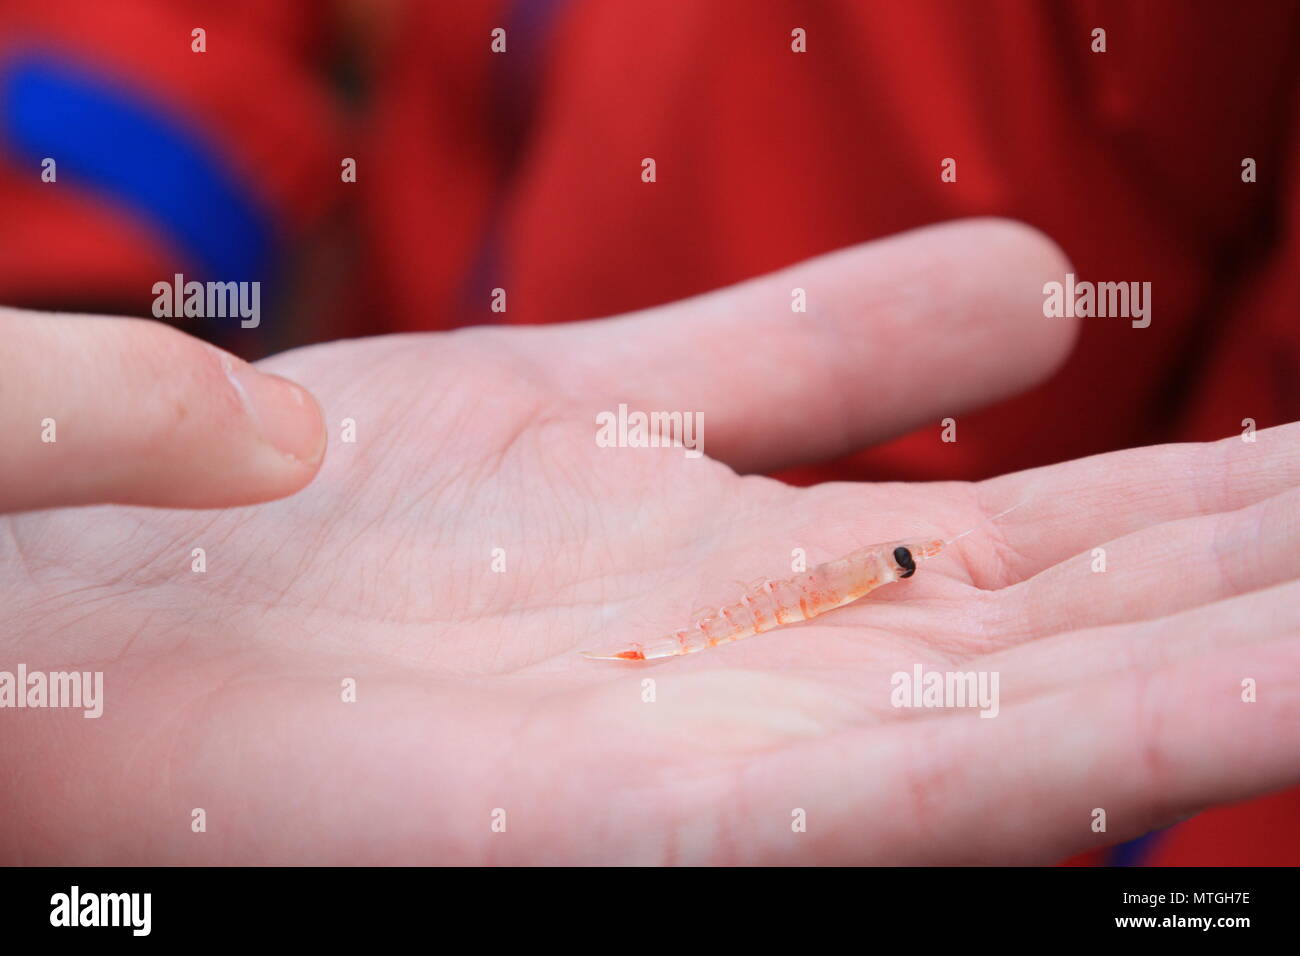 Antarctic krill close-up Stock Photo